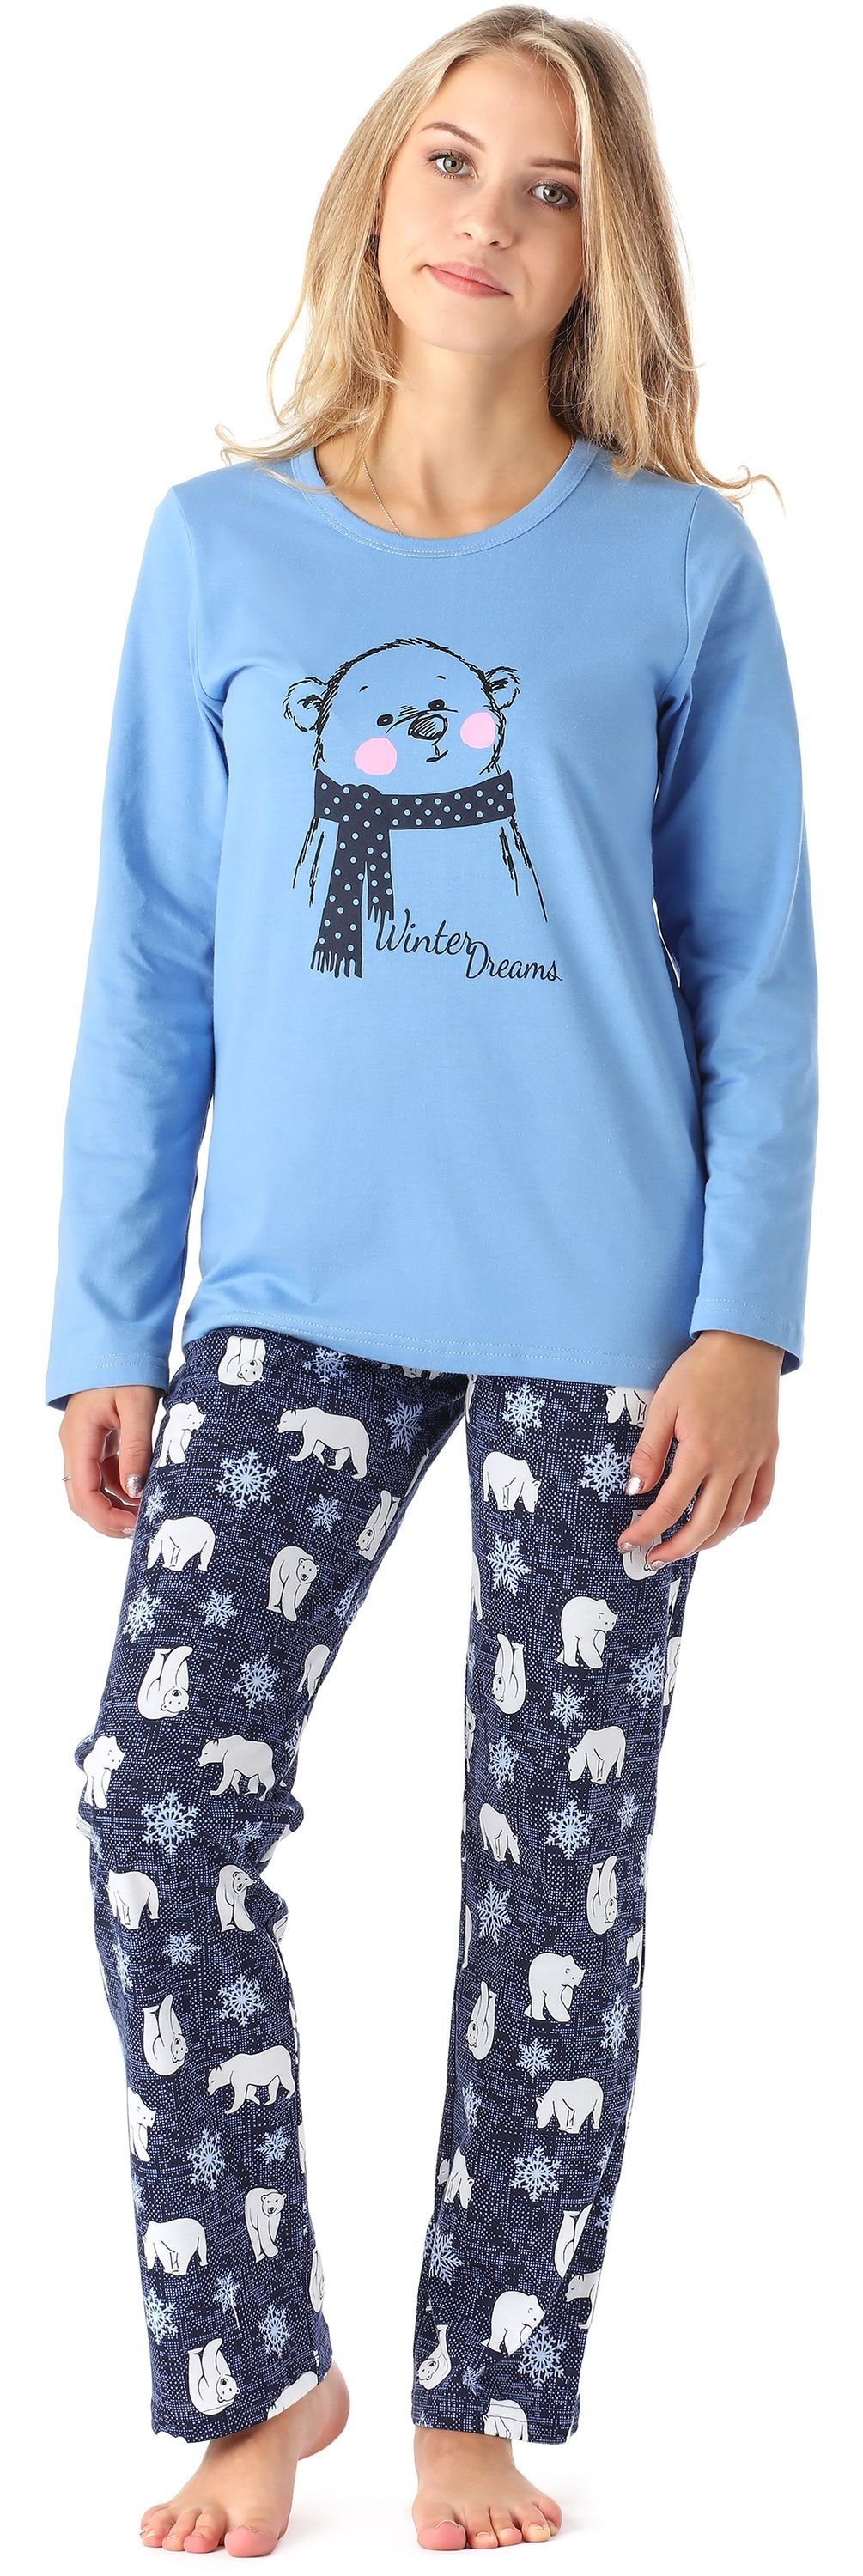 Merry Style Schlafanzug Damen Zweiteilieger Schlafanzug Pyjama Lang Winter MS10-192 Blau Bär